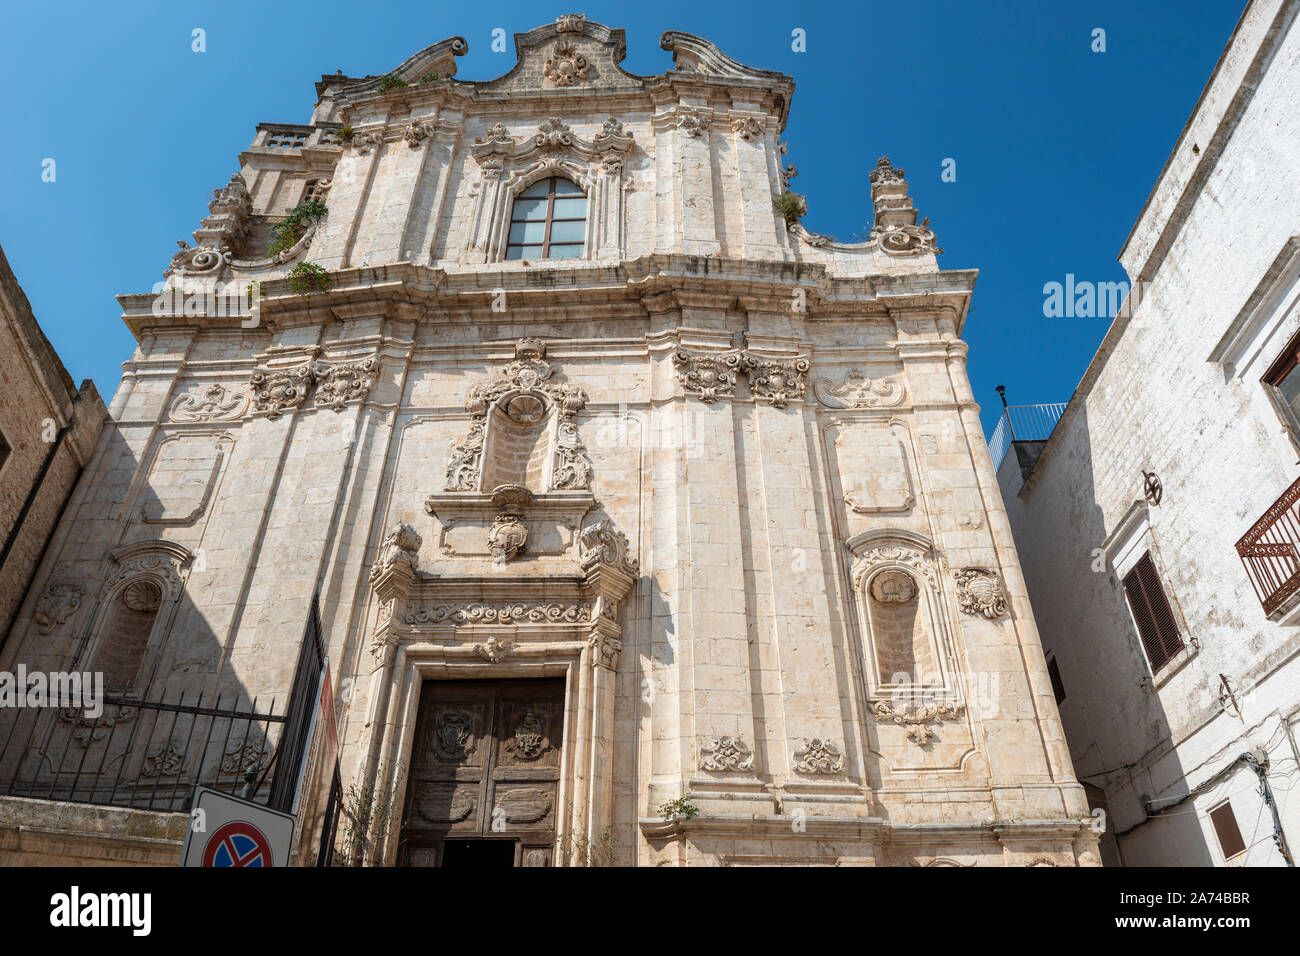 Chiesa di San Vito Martire in Ostuni in Apulia (Puglia), Southern Italy Stock Photo